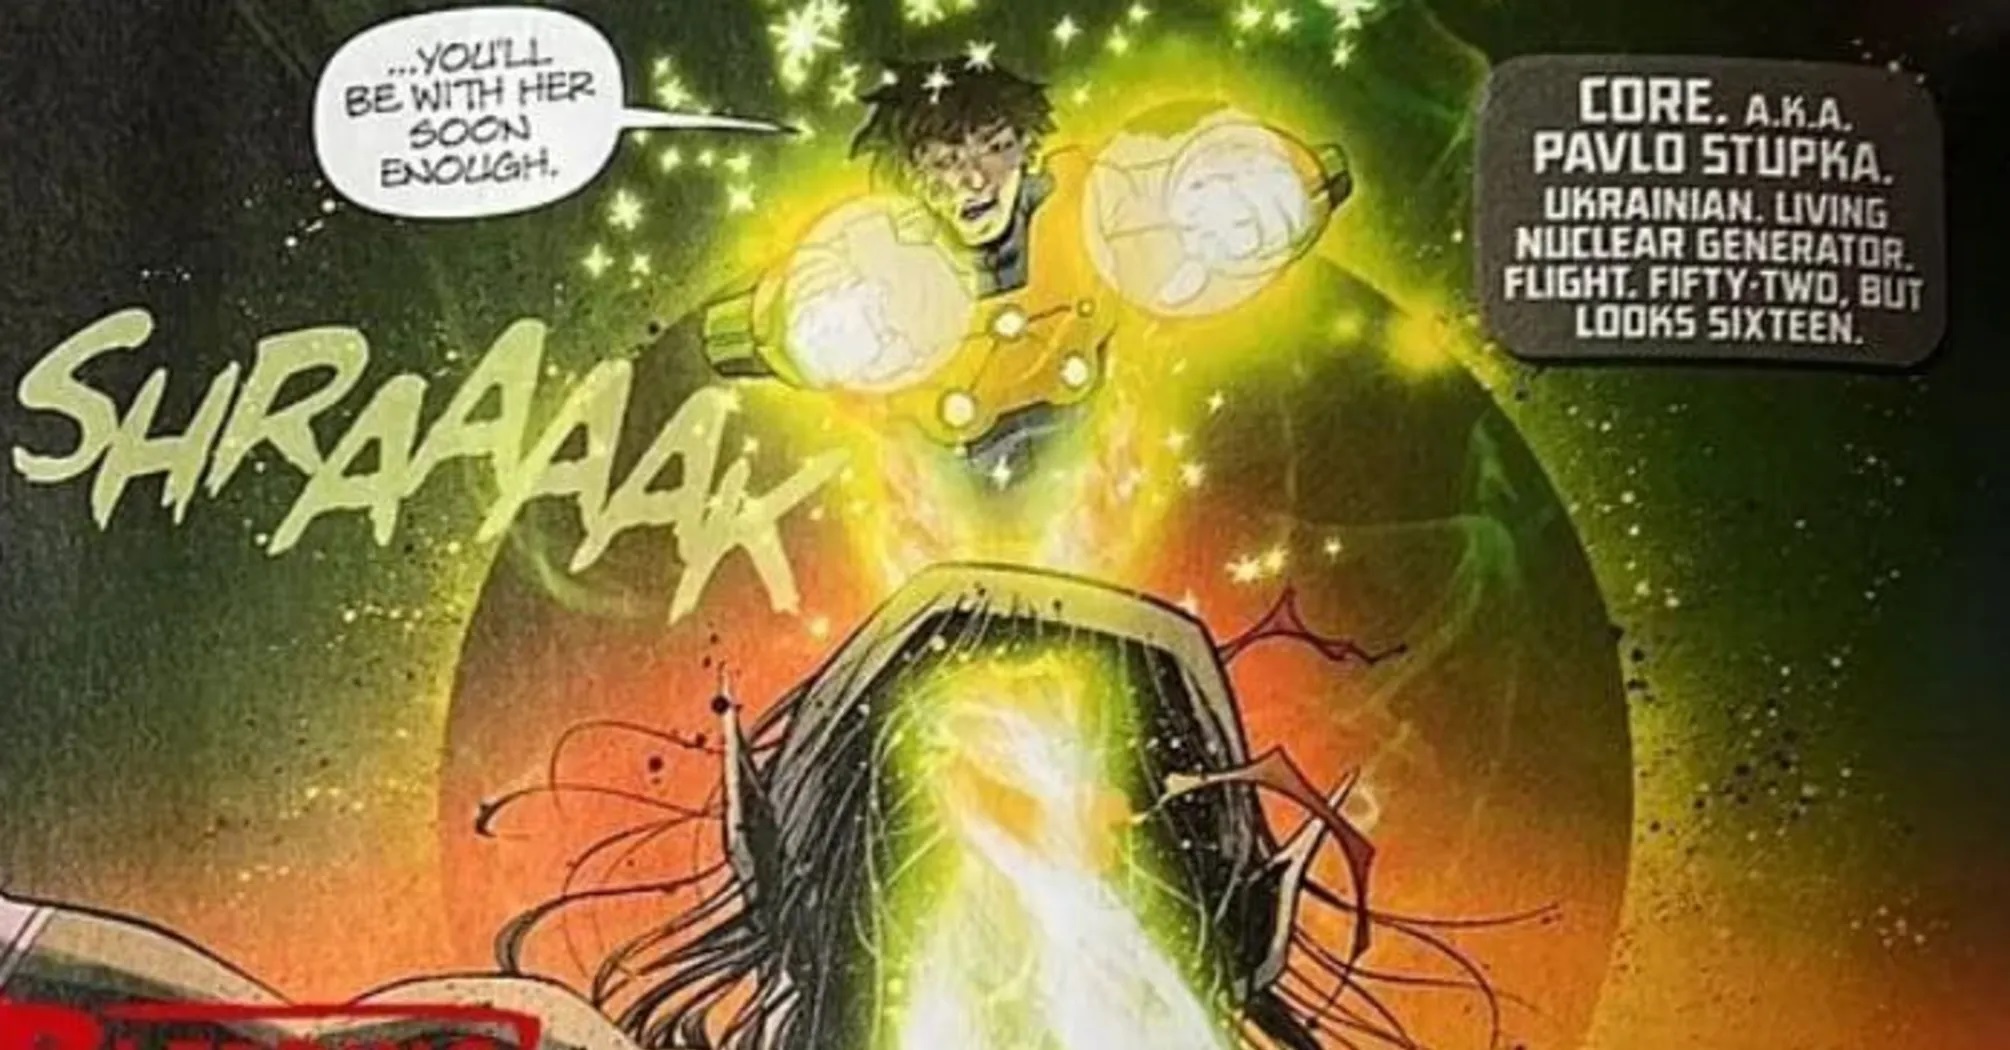 "Generatore nucleare vivente": l'ucraino Pavlo Stupka è diventato il nuovo supereroe della DC Comics